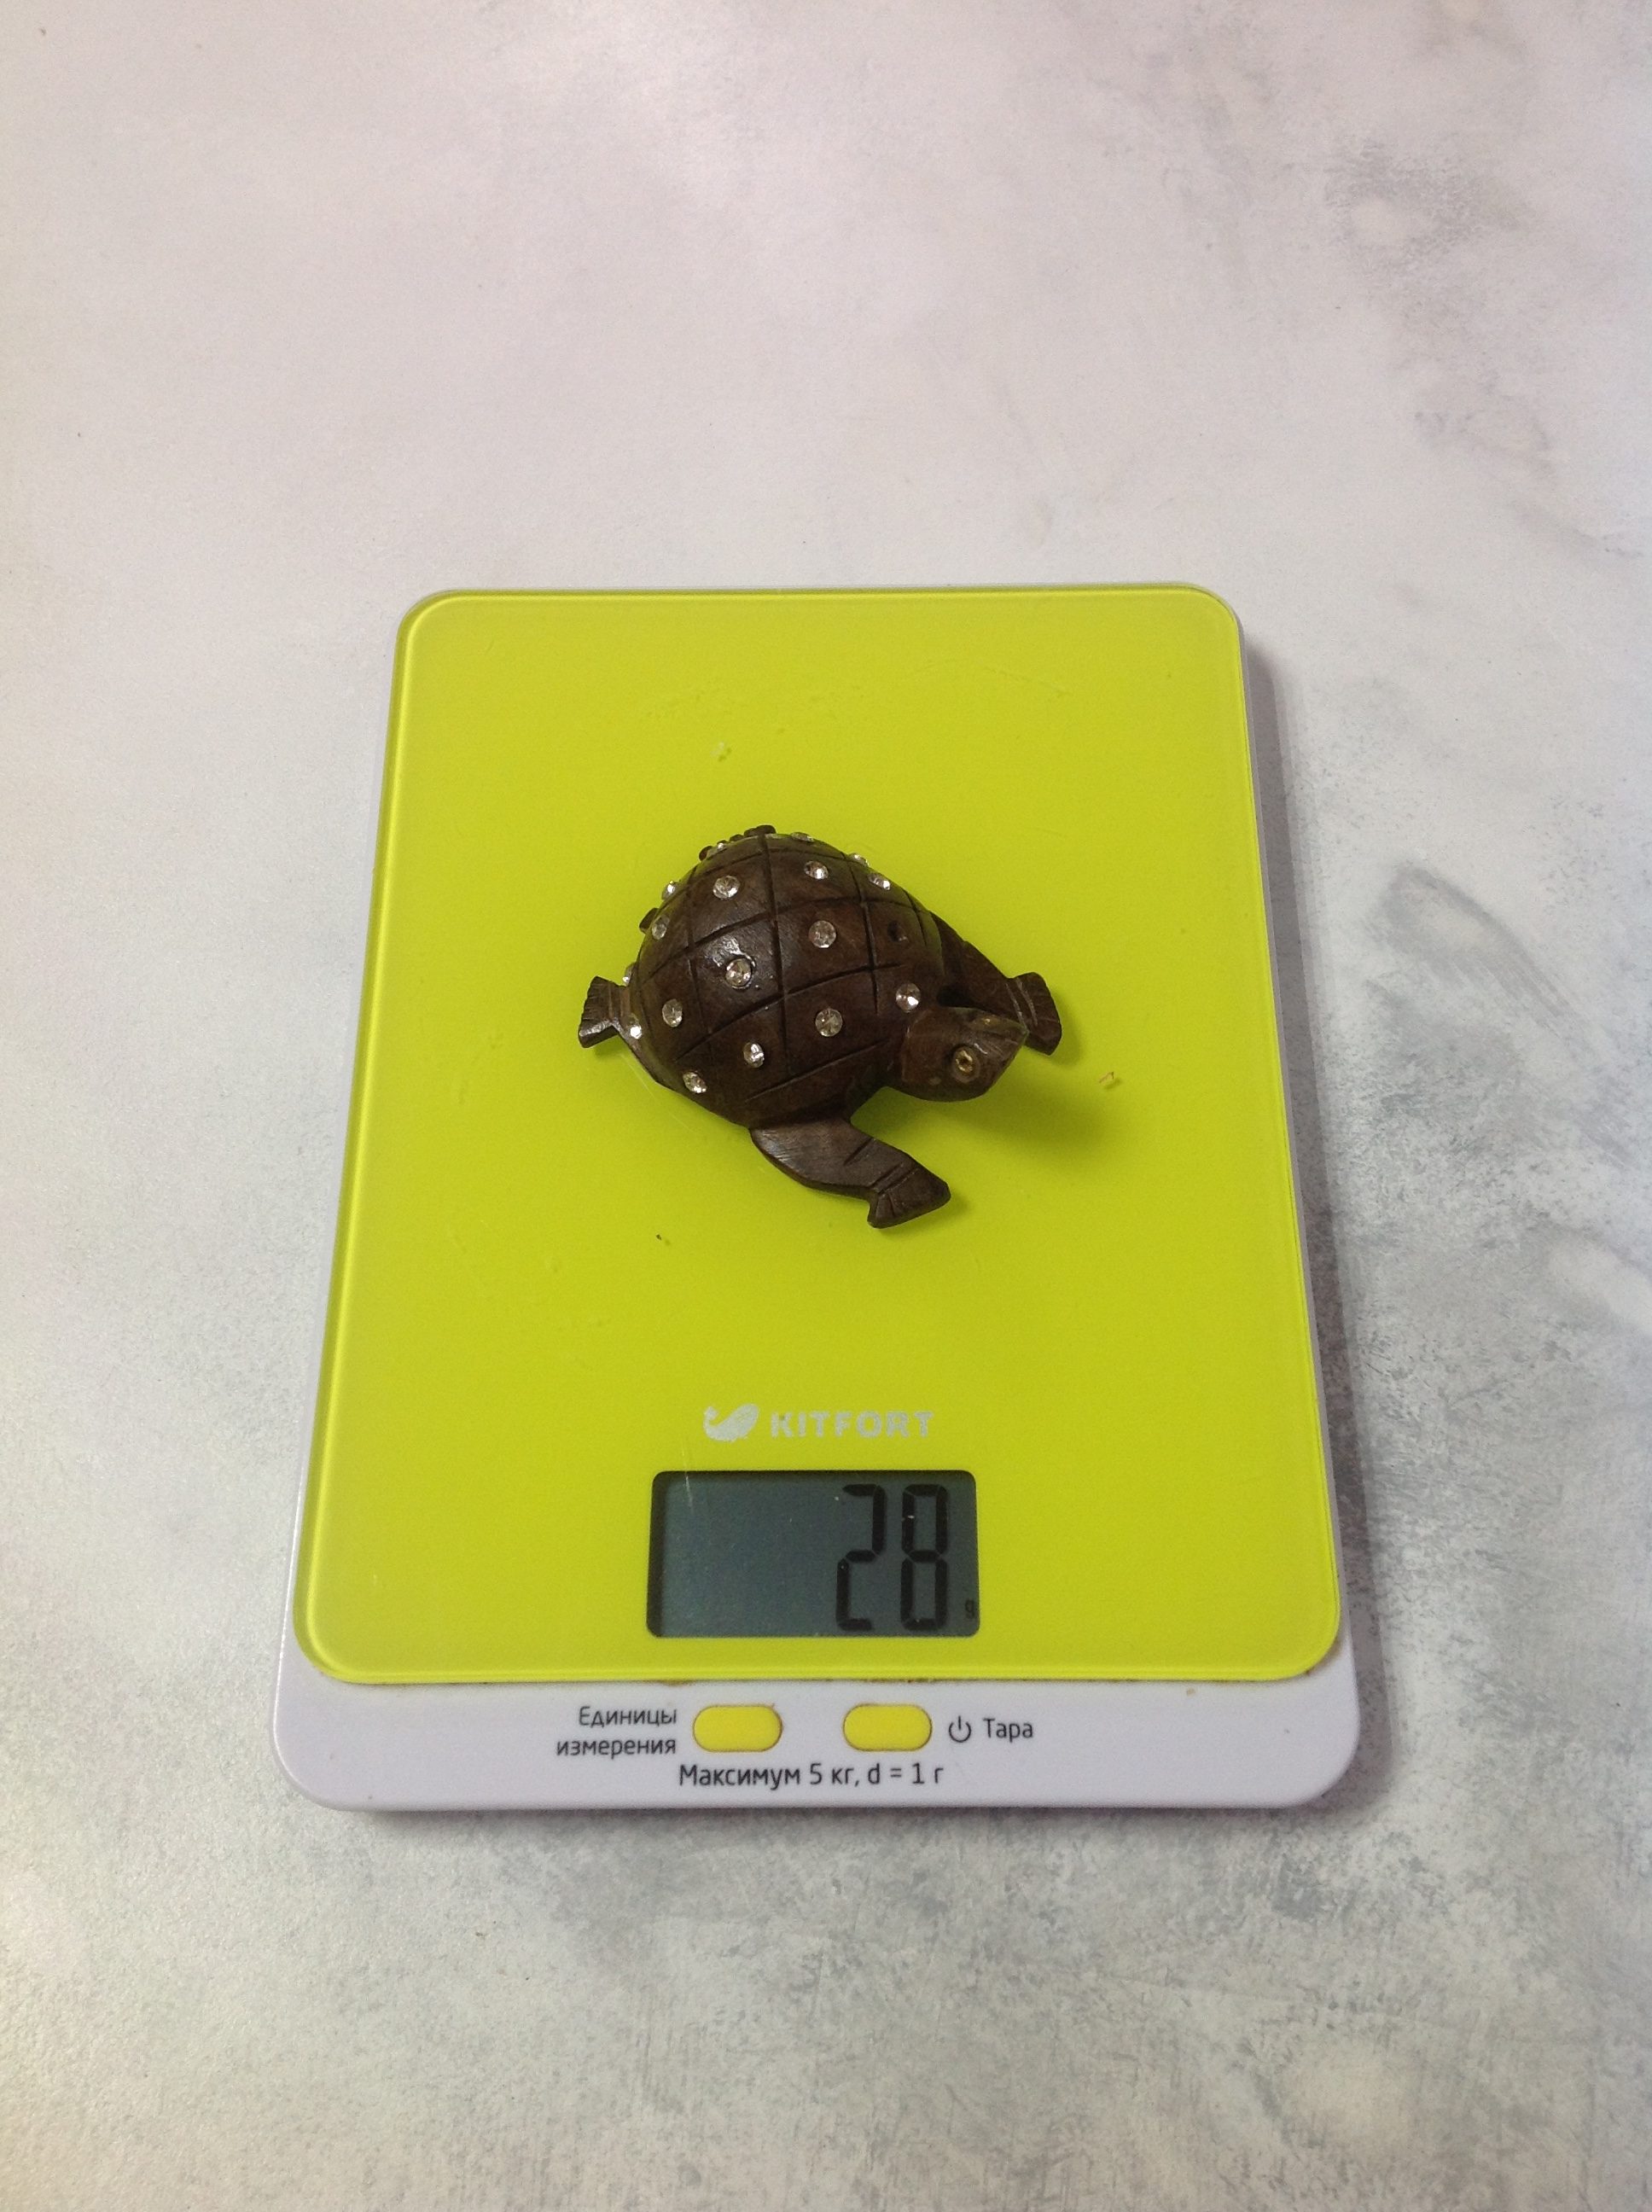 Berapa berat kura-kura kayu kecil untuk suvenir?